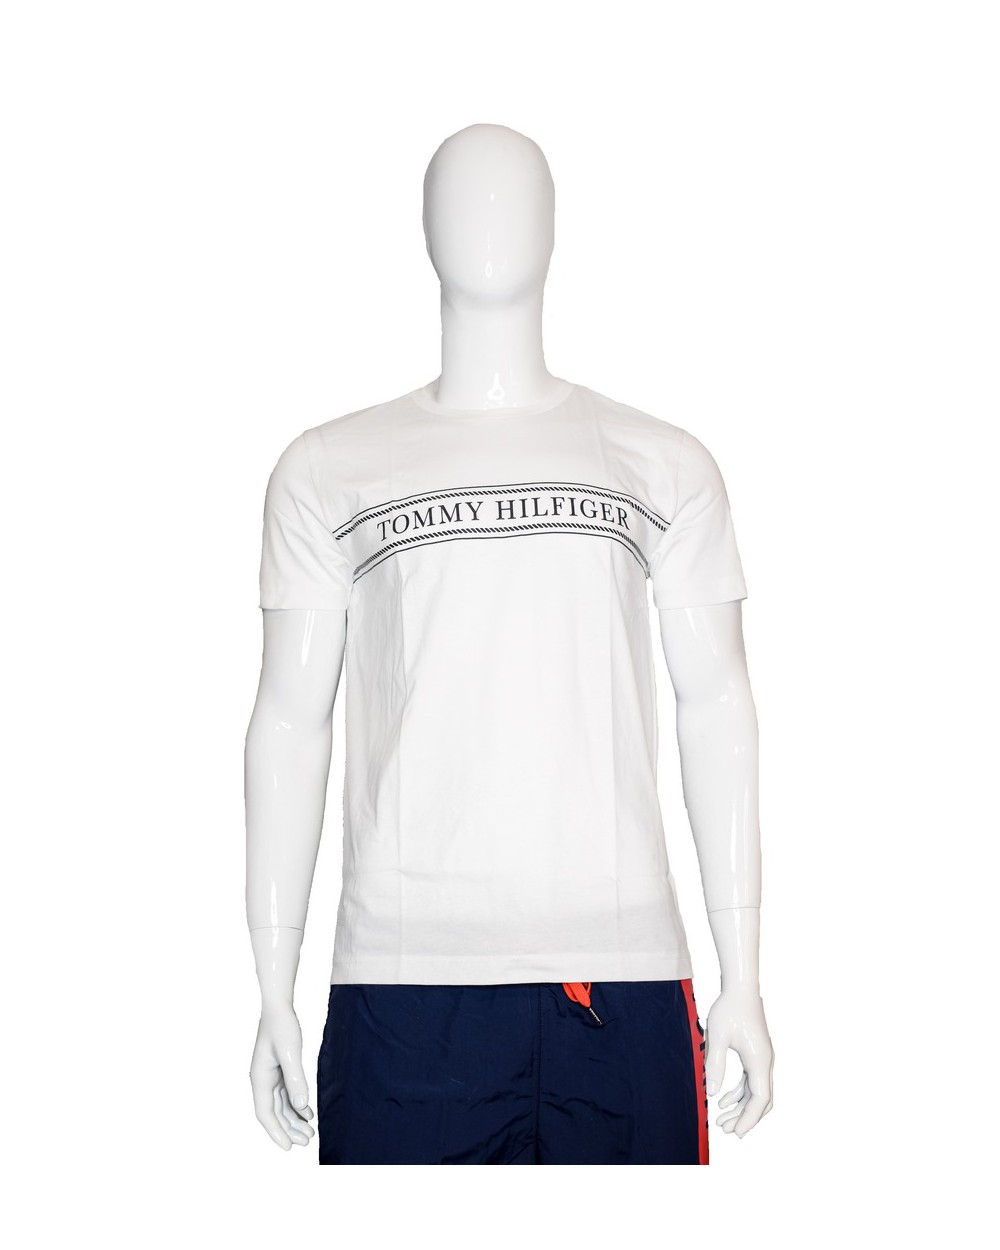 Koszulka TOMMY HILFIGER - MW0MW13333 YBR biały